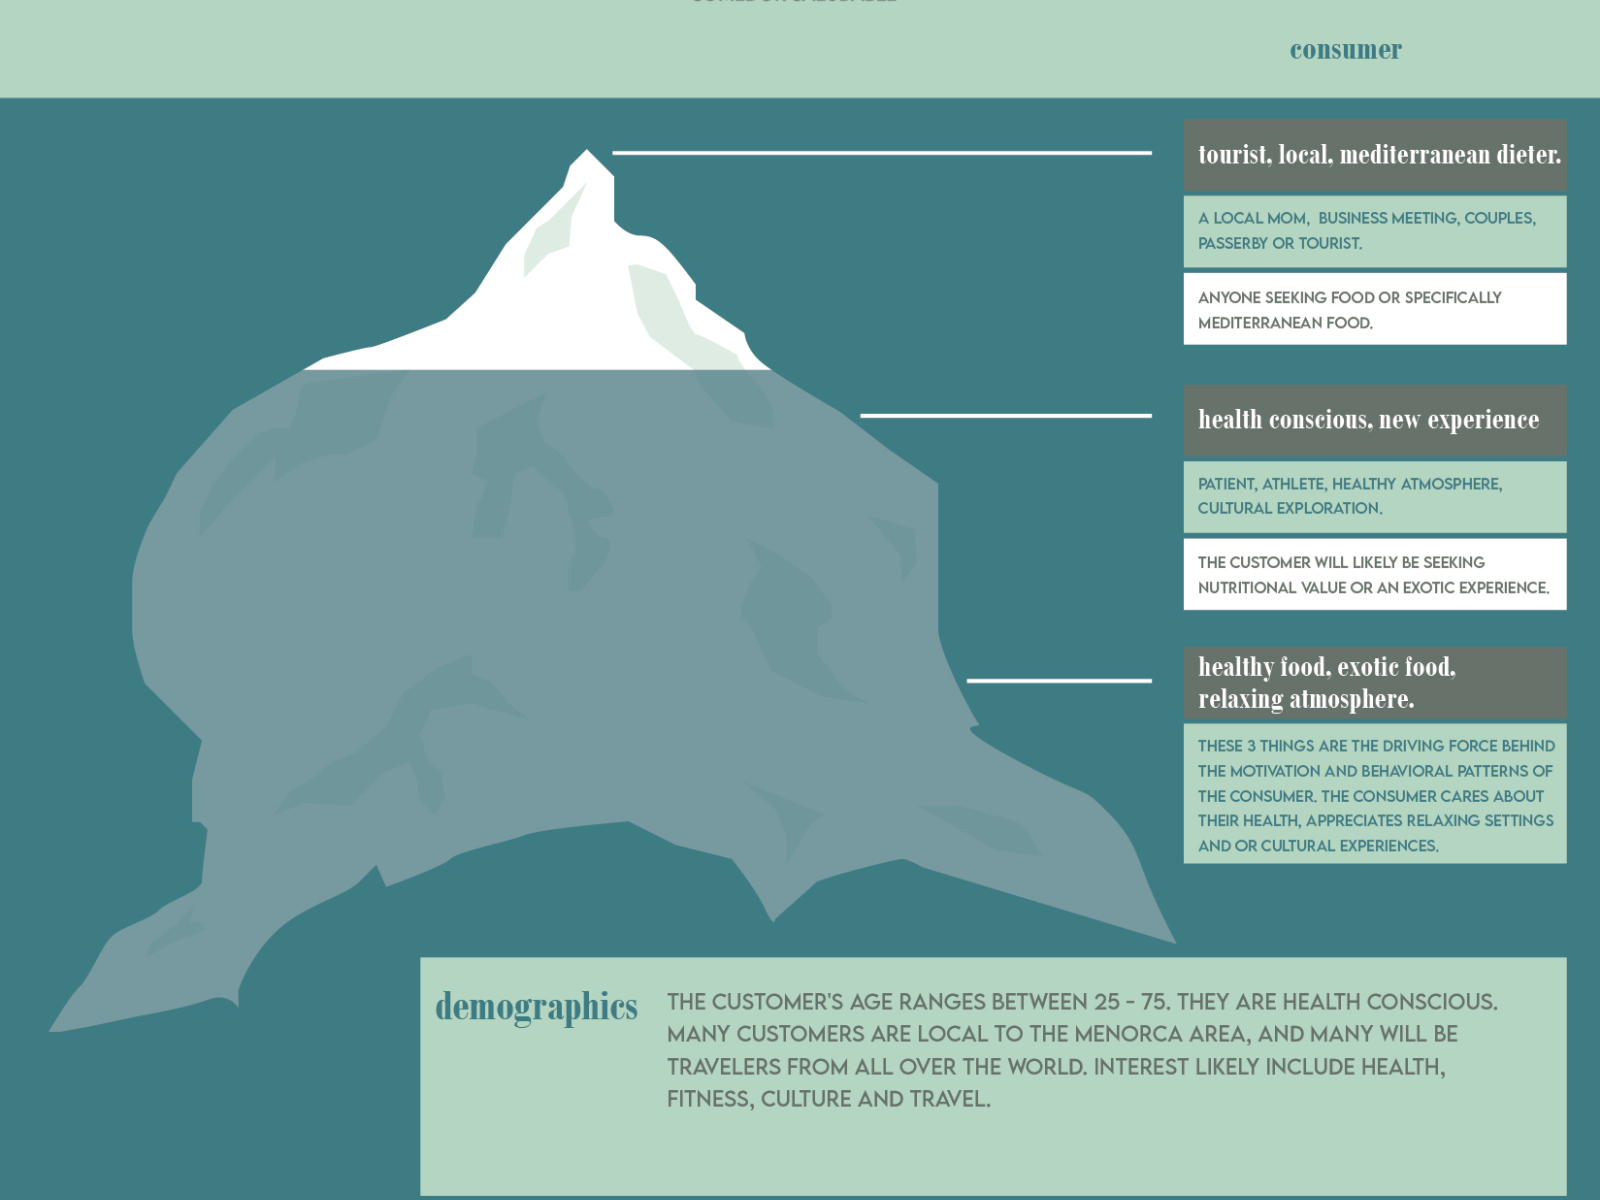 Iceberg Model Segmentation by Dennis Bosher on Dribbble